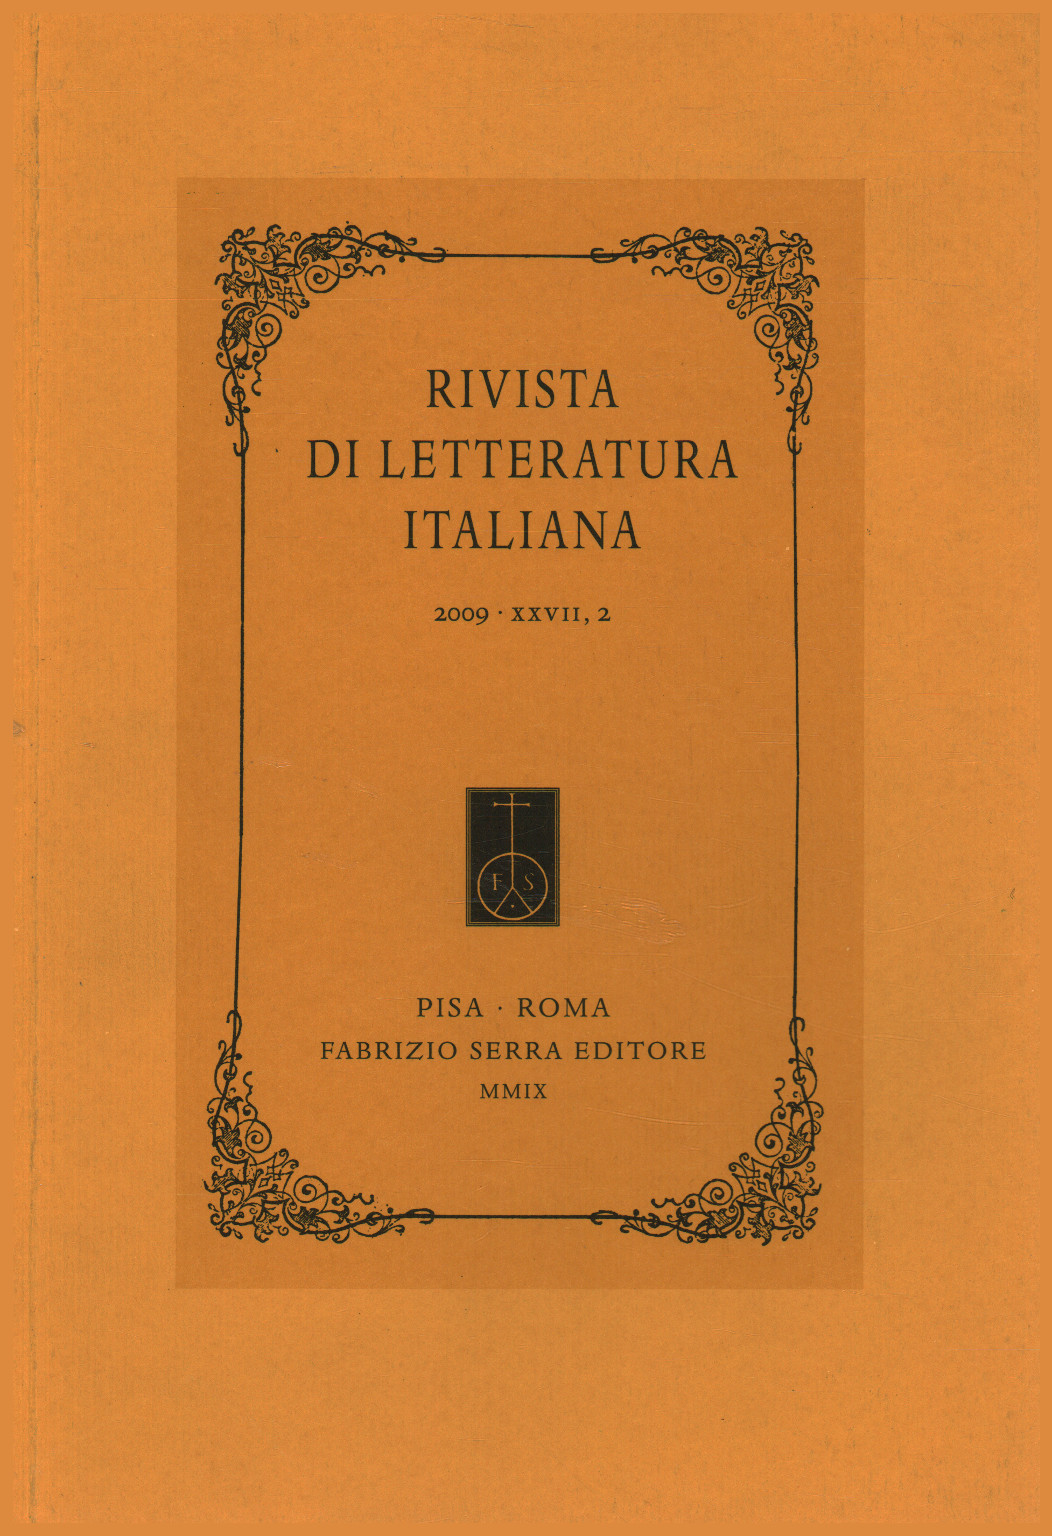 Rivista di letteratura italiana 2009,XXVII,2, s.a.